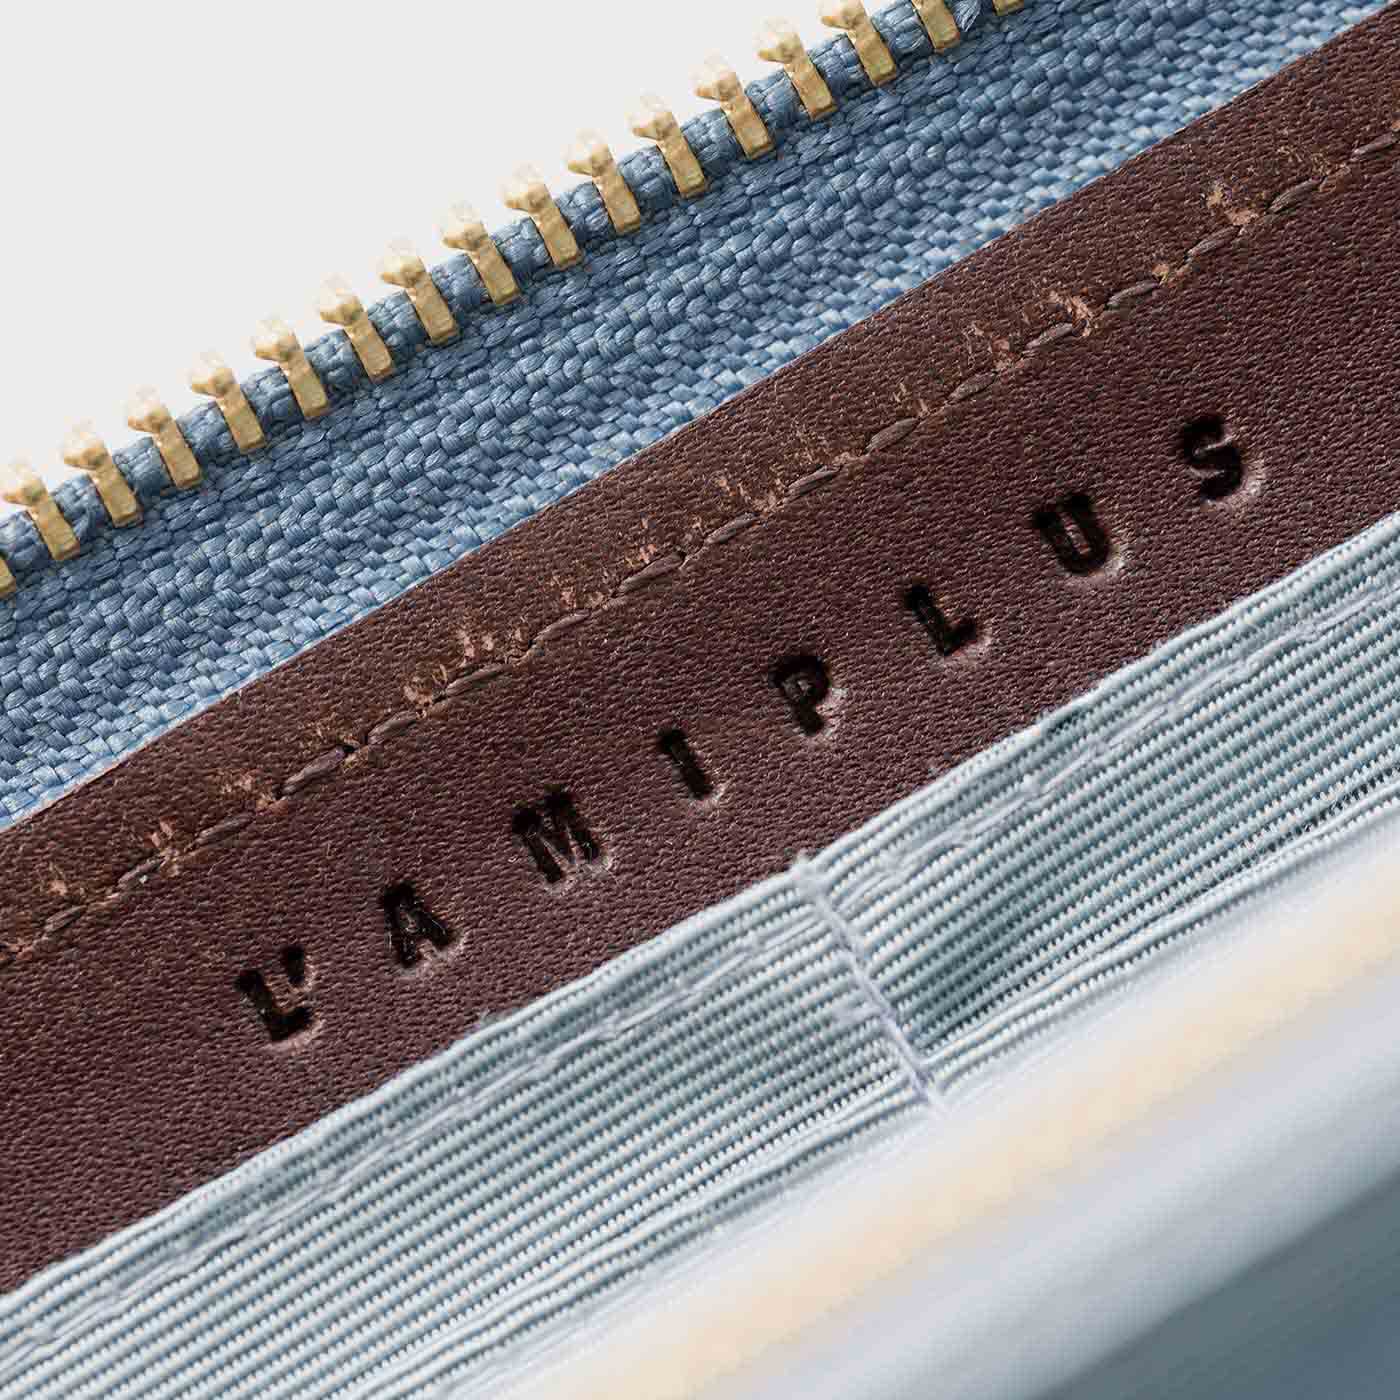 L'AMIPLUS|ラミプリュス　内側じゃばら本革遣い 麗しい草花が織り上げられた ジャカード長財布〈ターコイズブルー〉|内側のL'AMI PLUSの型押しロゴがアクセント。